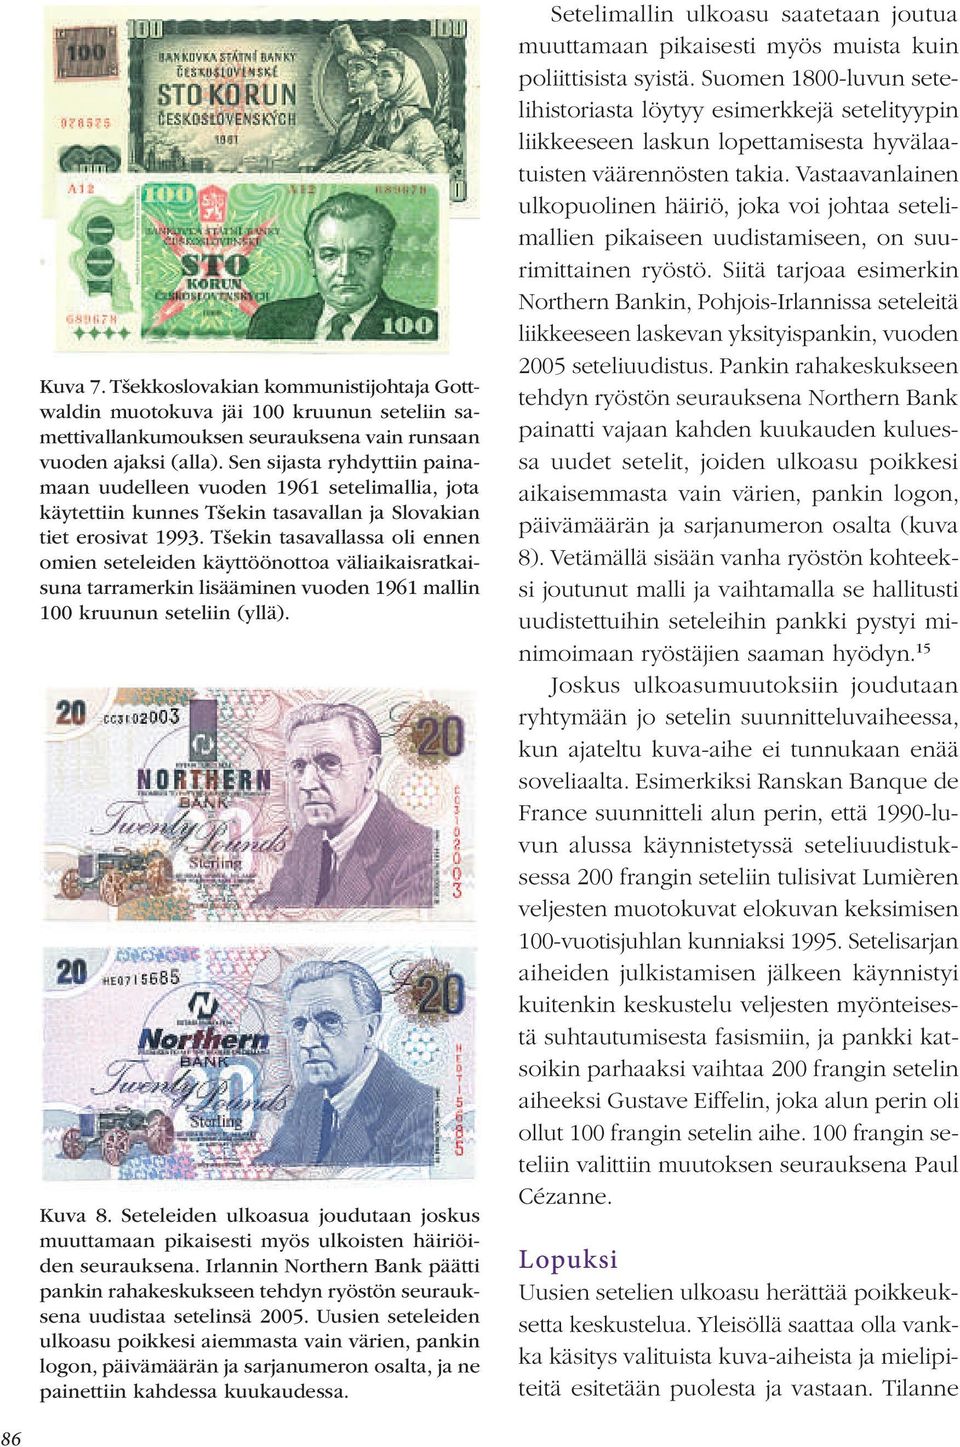 Tšekin tasavallassa oli ennen omien seteleiden käyttöönottoa väliaikaisratkaisuna tarramerkin lisääminen vuoden 1961 mallin 100 kruunun seteliin (yllä). Kuva 8.